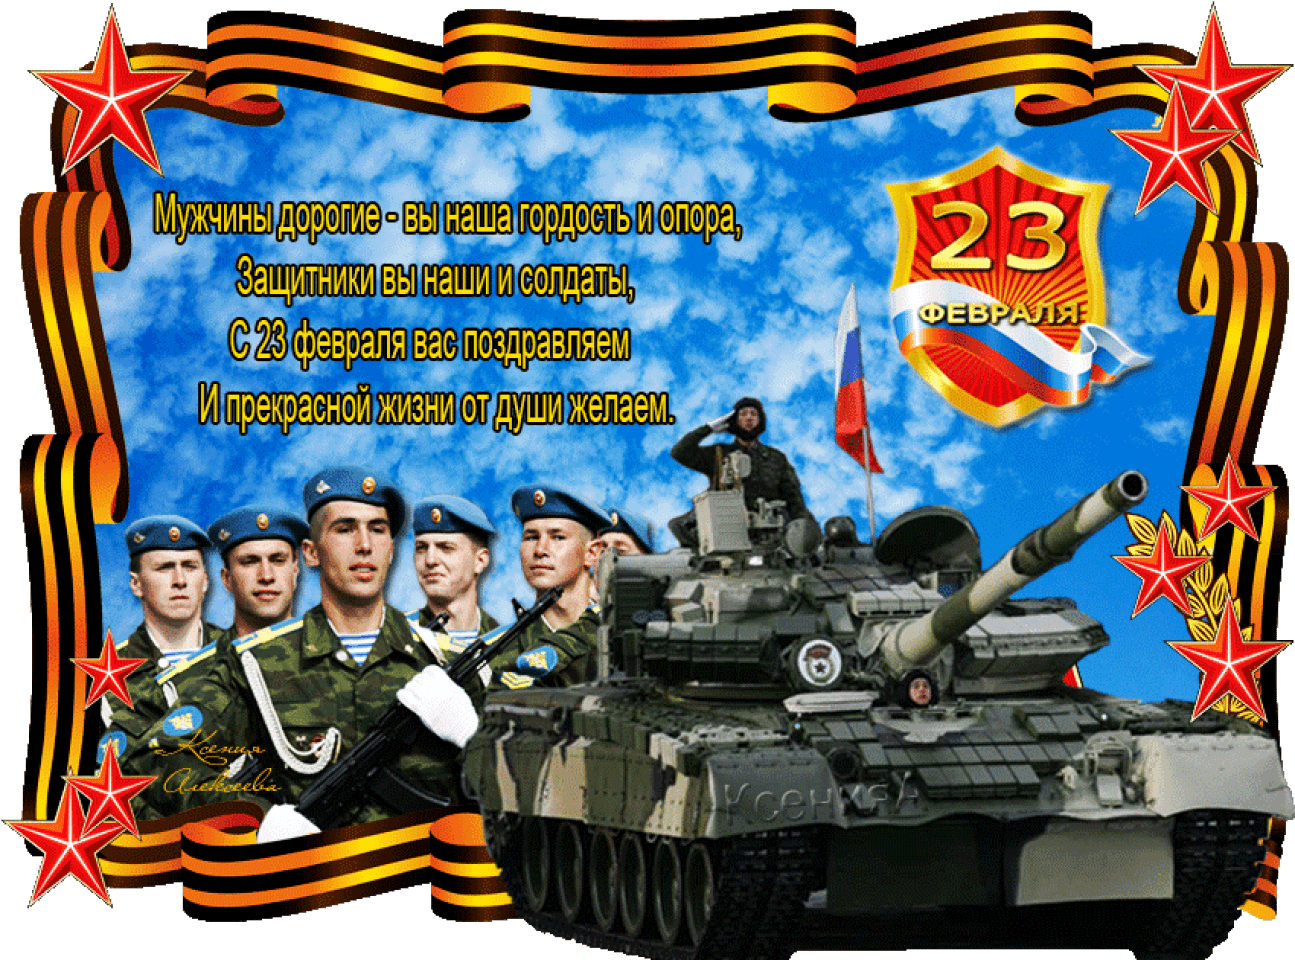 Что будет 23 февраля в москве. Поздравление с 23 февраля. Открытка 23 февраля. Поздравление с 23 февраля мужчинам. С днём защитника Отечества 23.